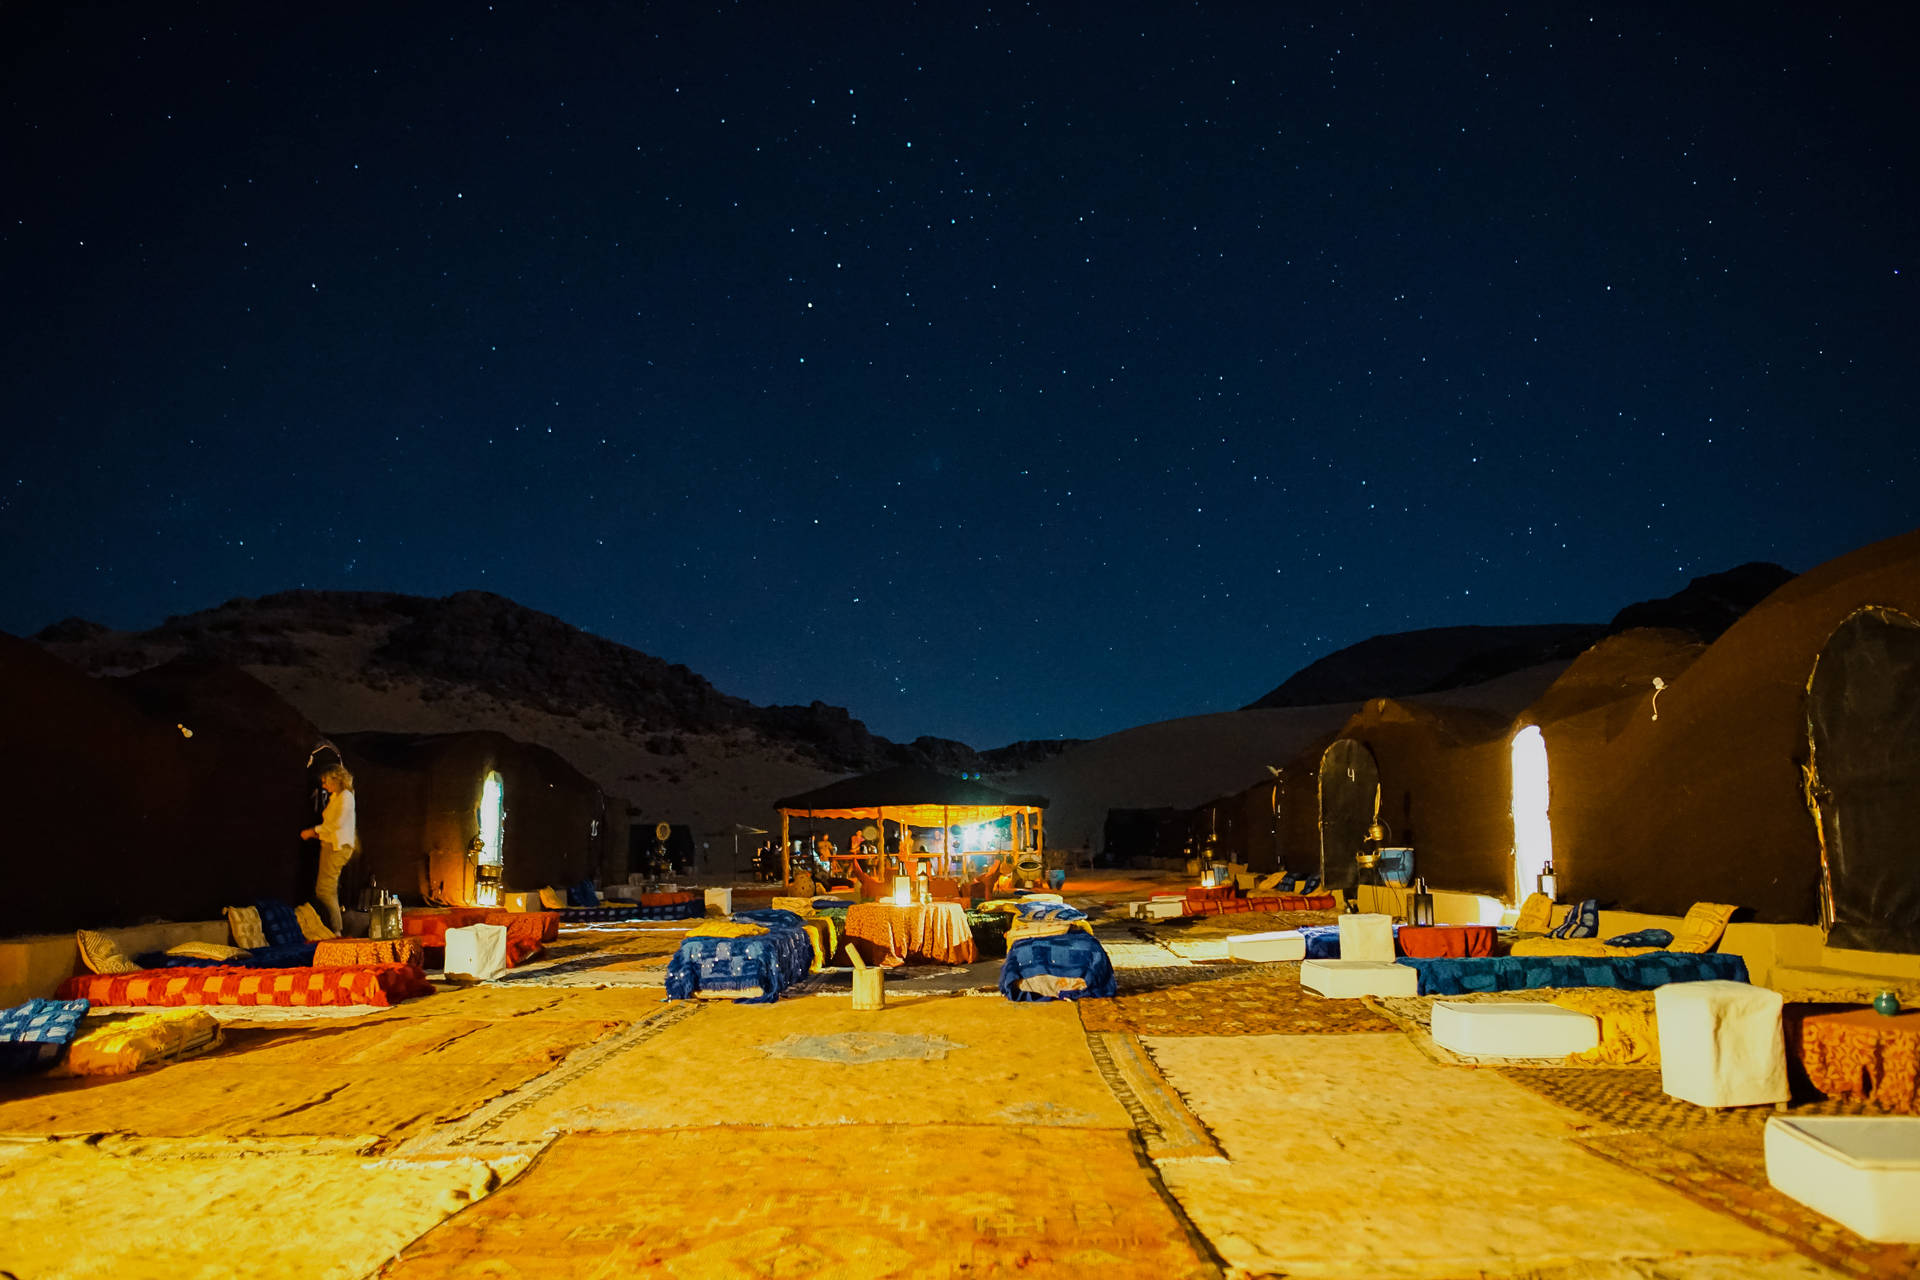 Sahara Camping Spot Kan Översättas Till 